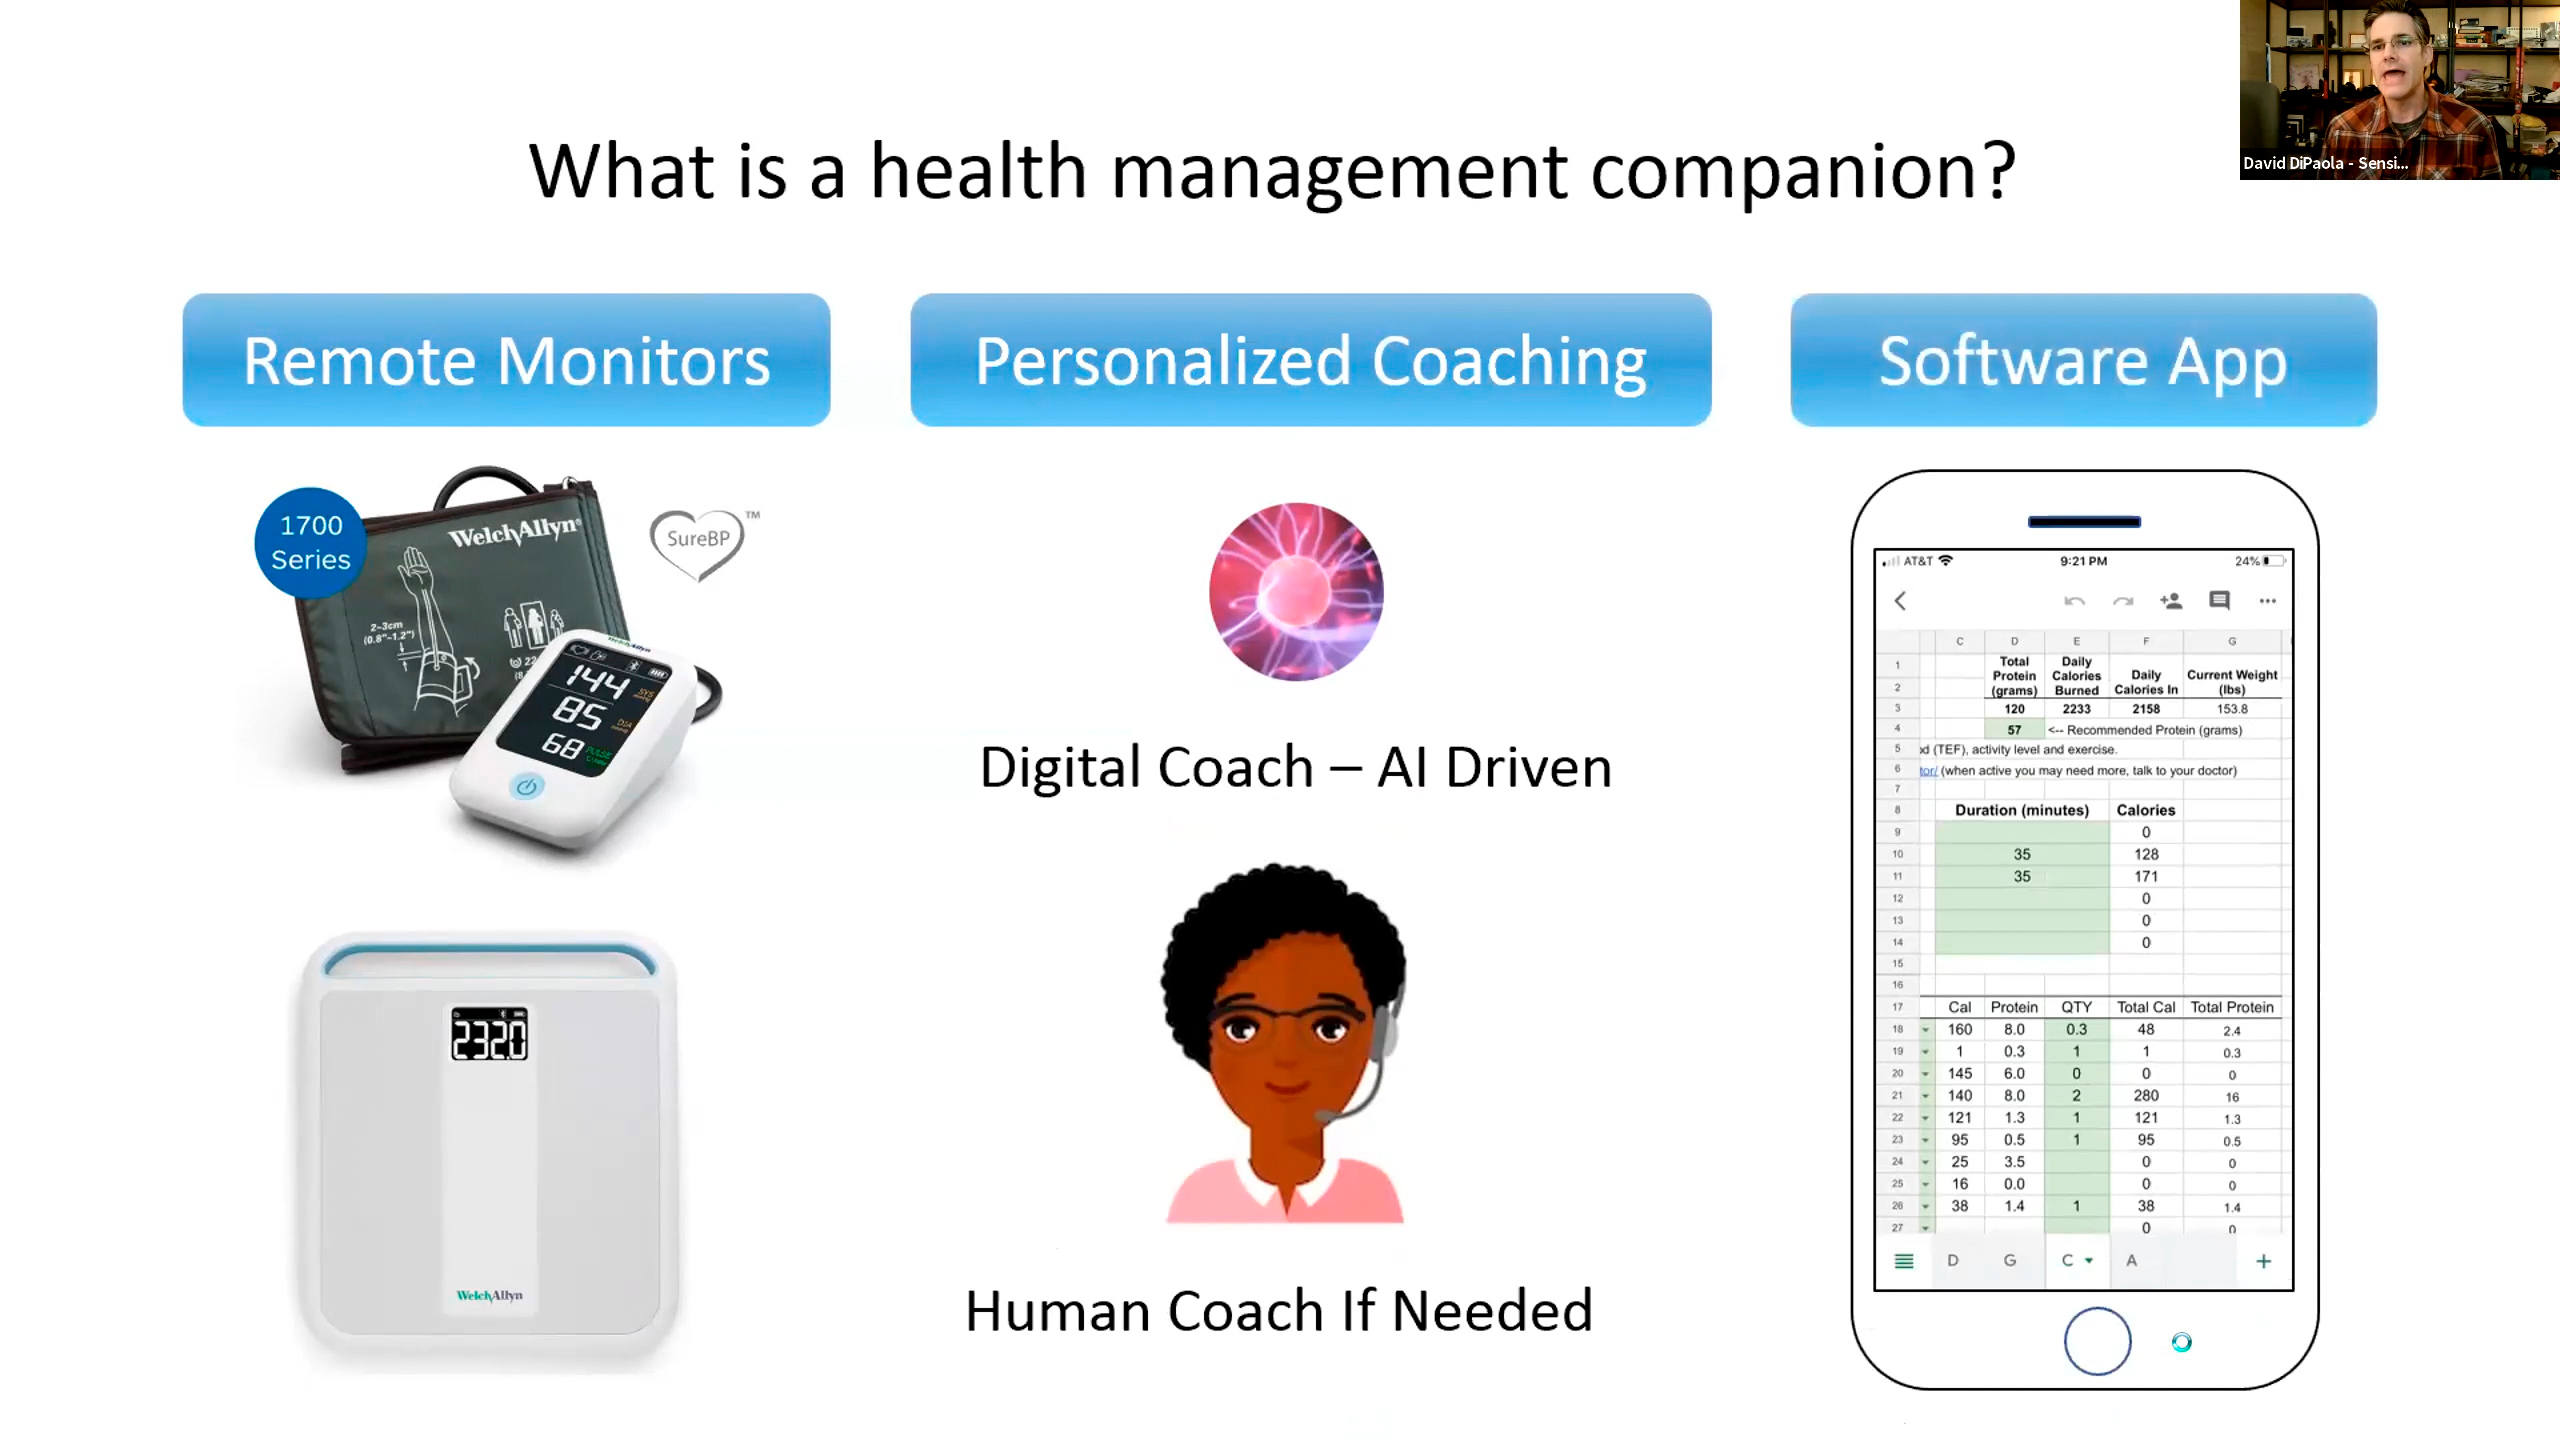 What is a Health Management Companion (HMC)